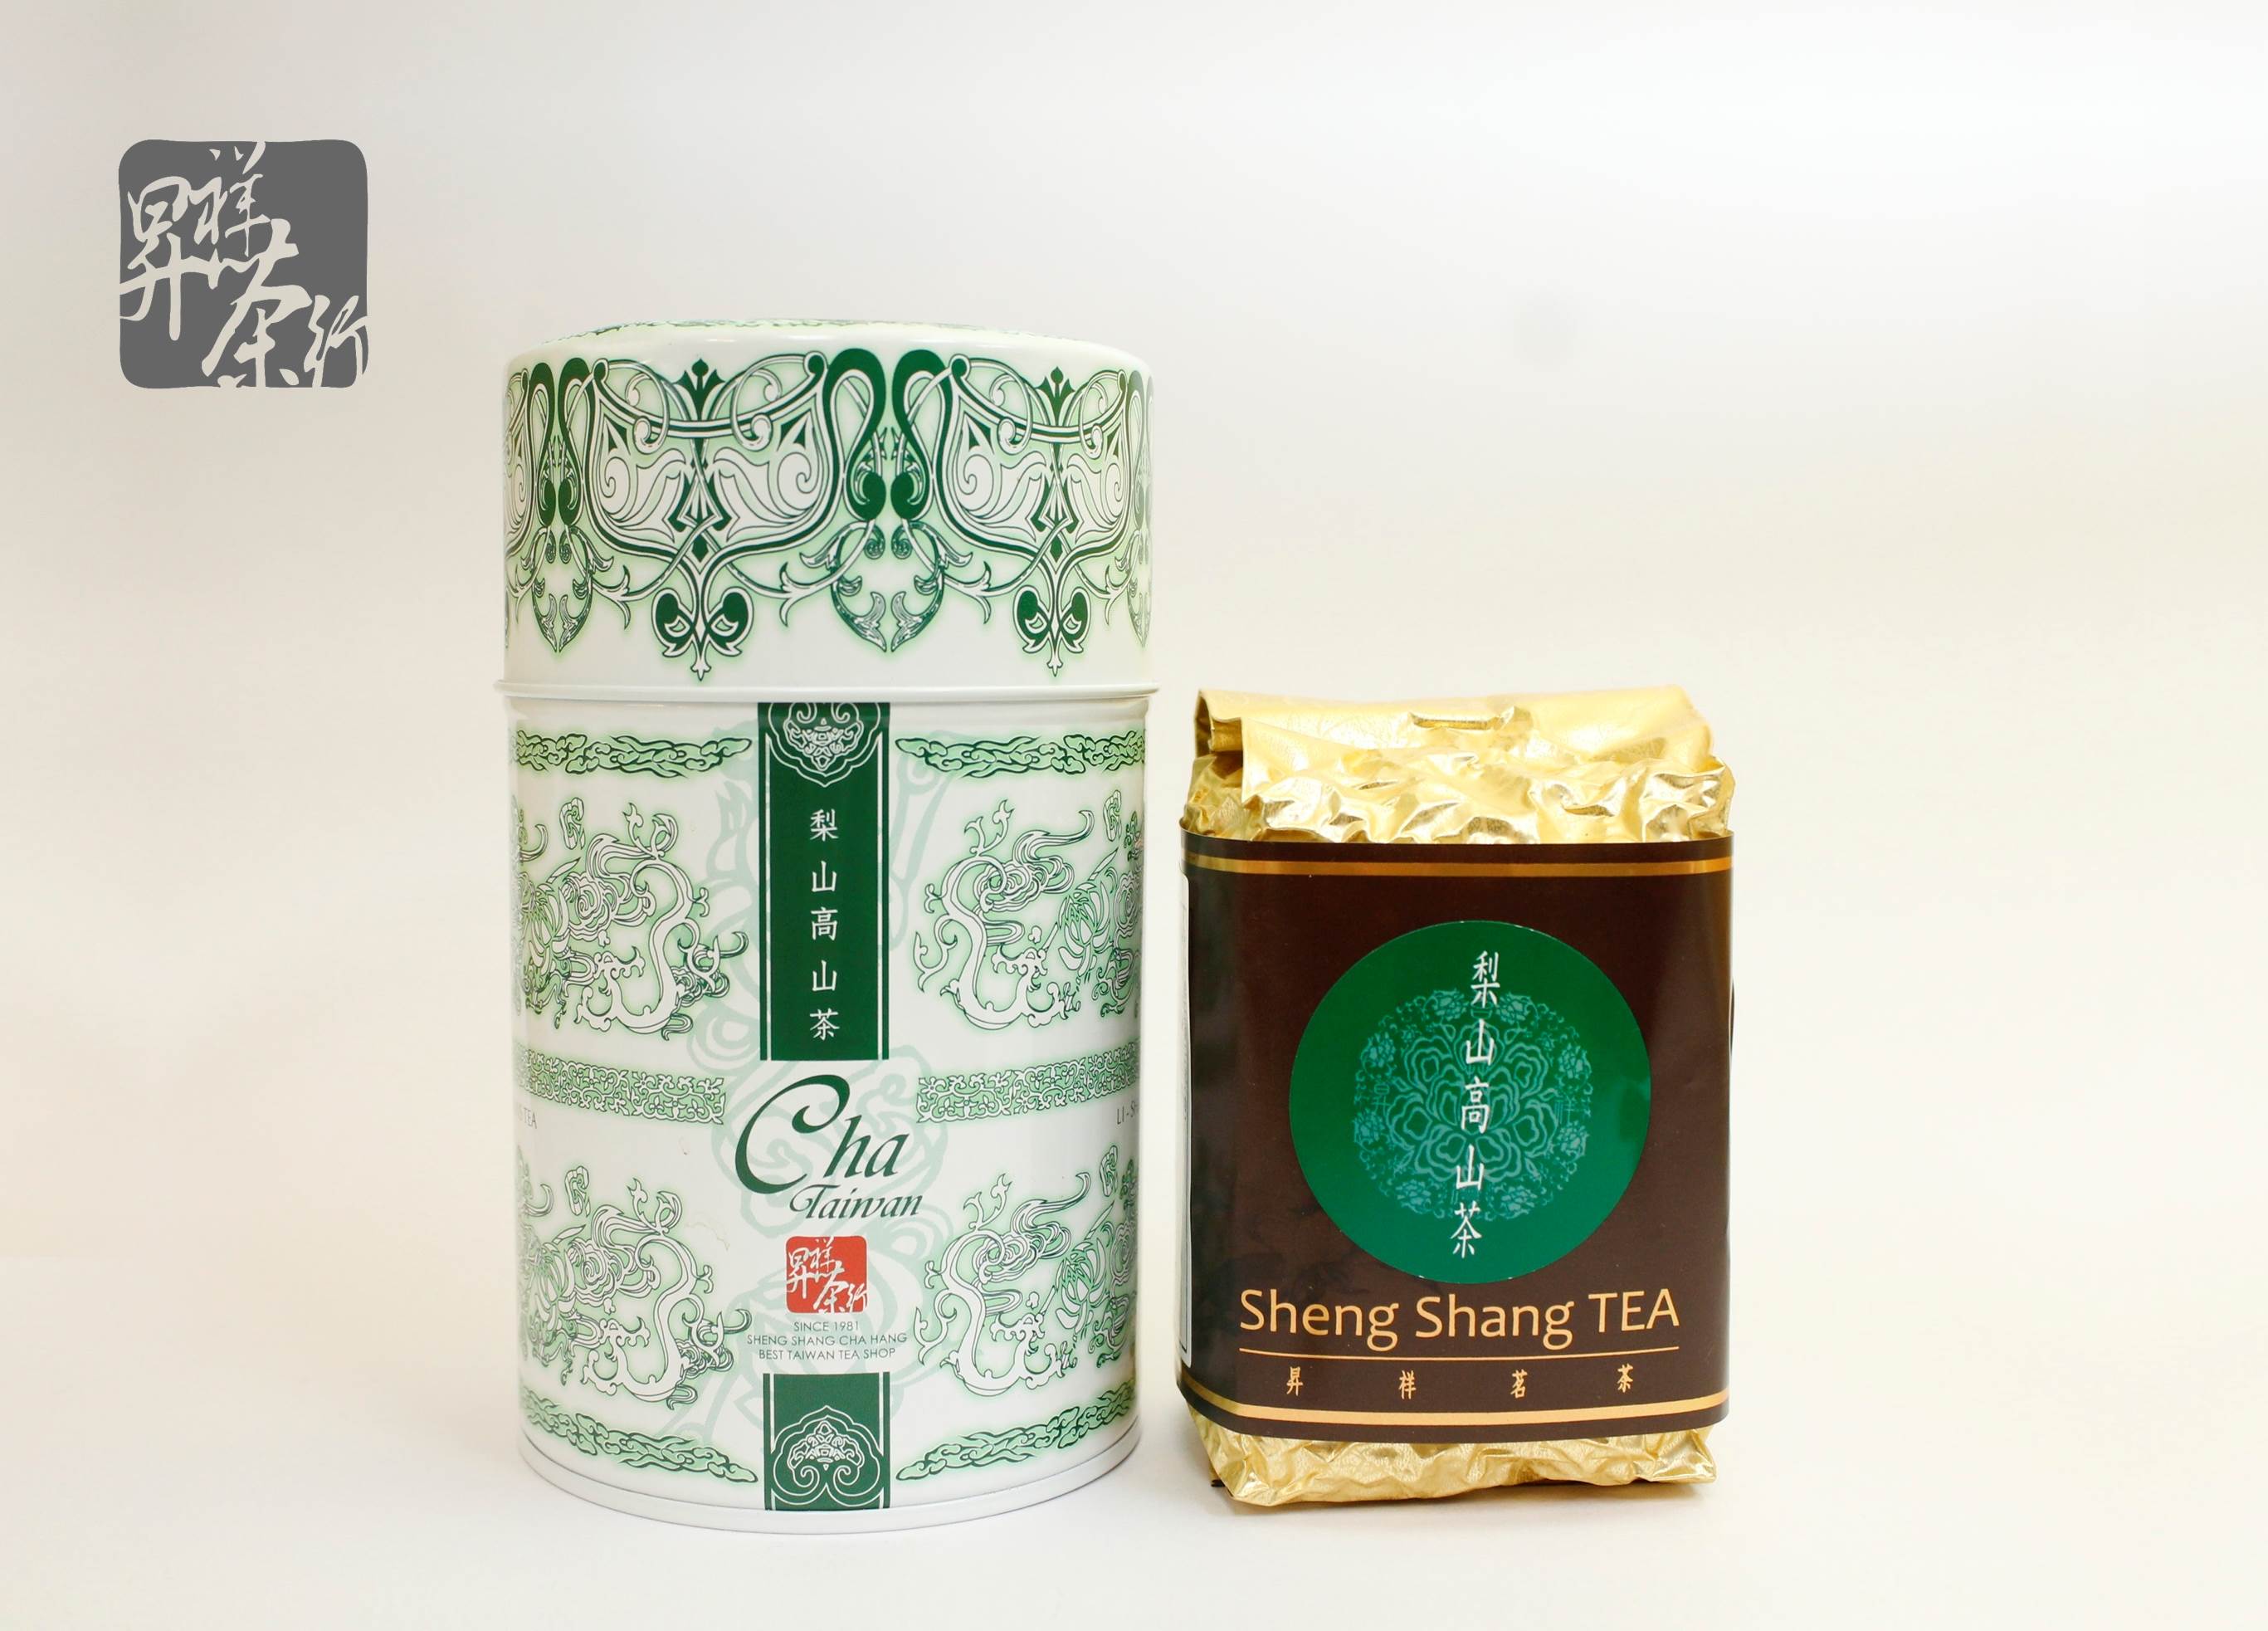 【昇祥】梨山高山茶【春/冬茶】150克/罐(茶葉/台灣茶)